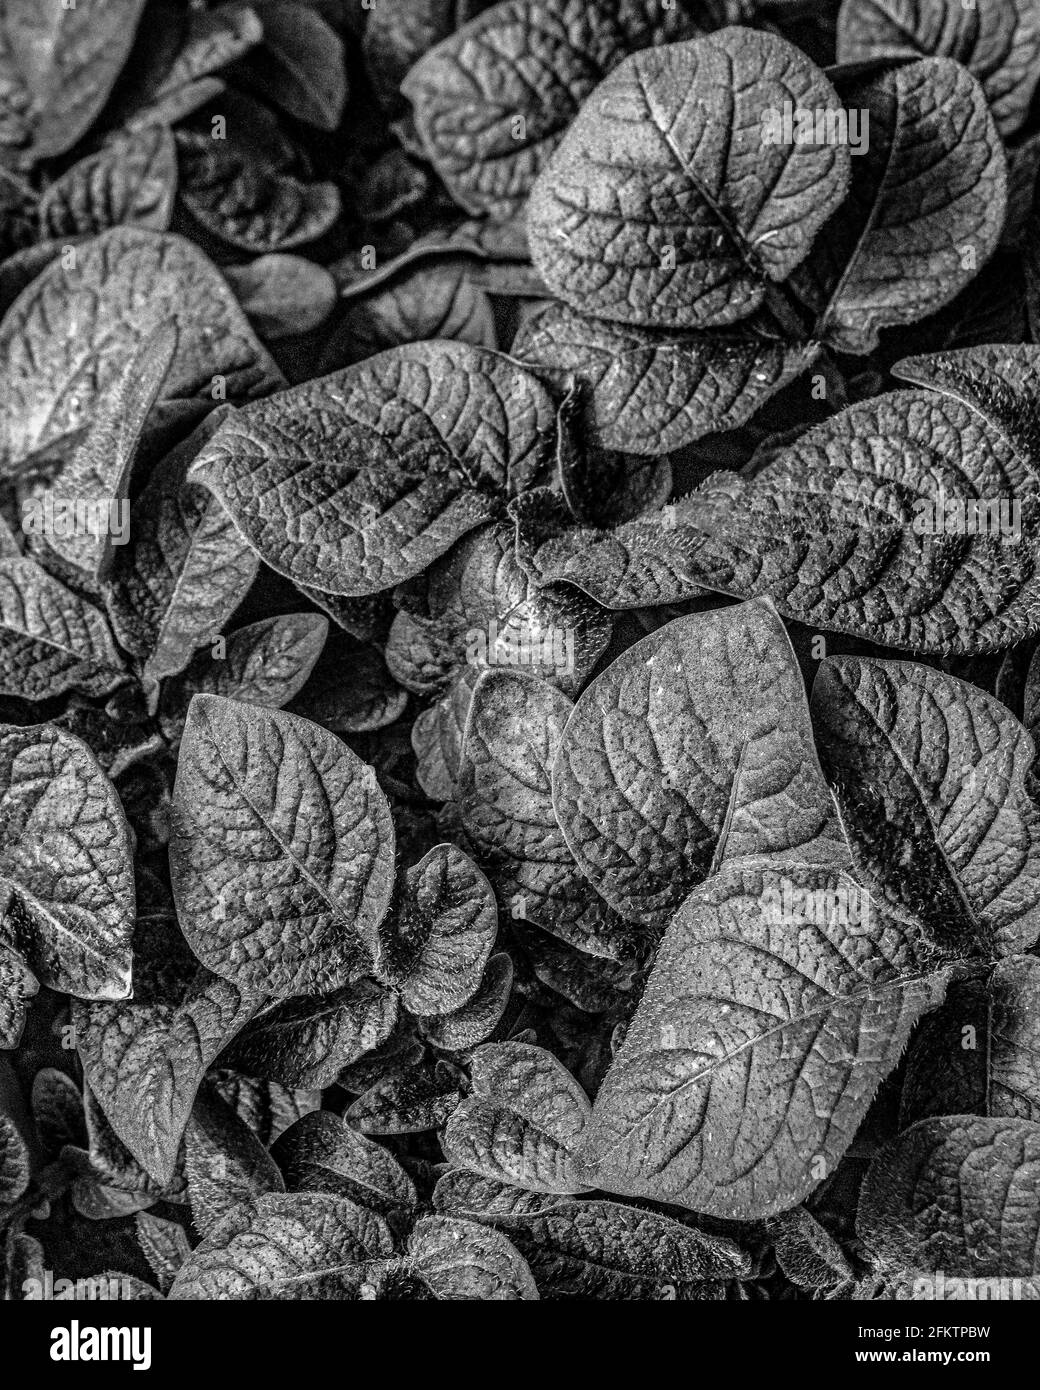 Immagine in bianco e nero delle foglie di piante di patate Foto Stock